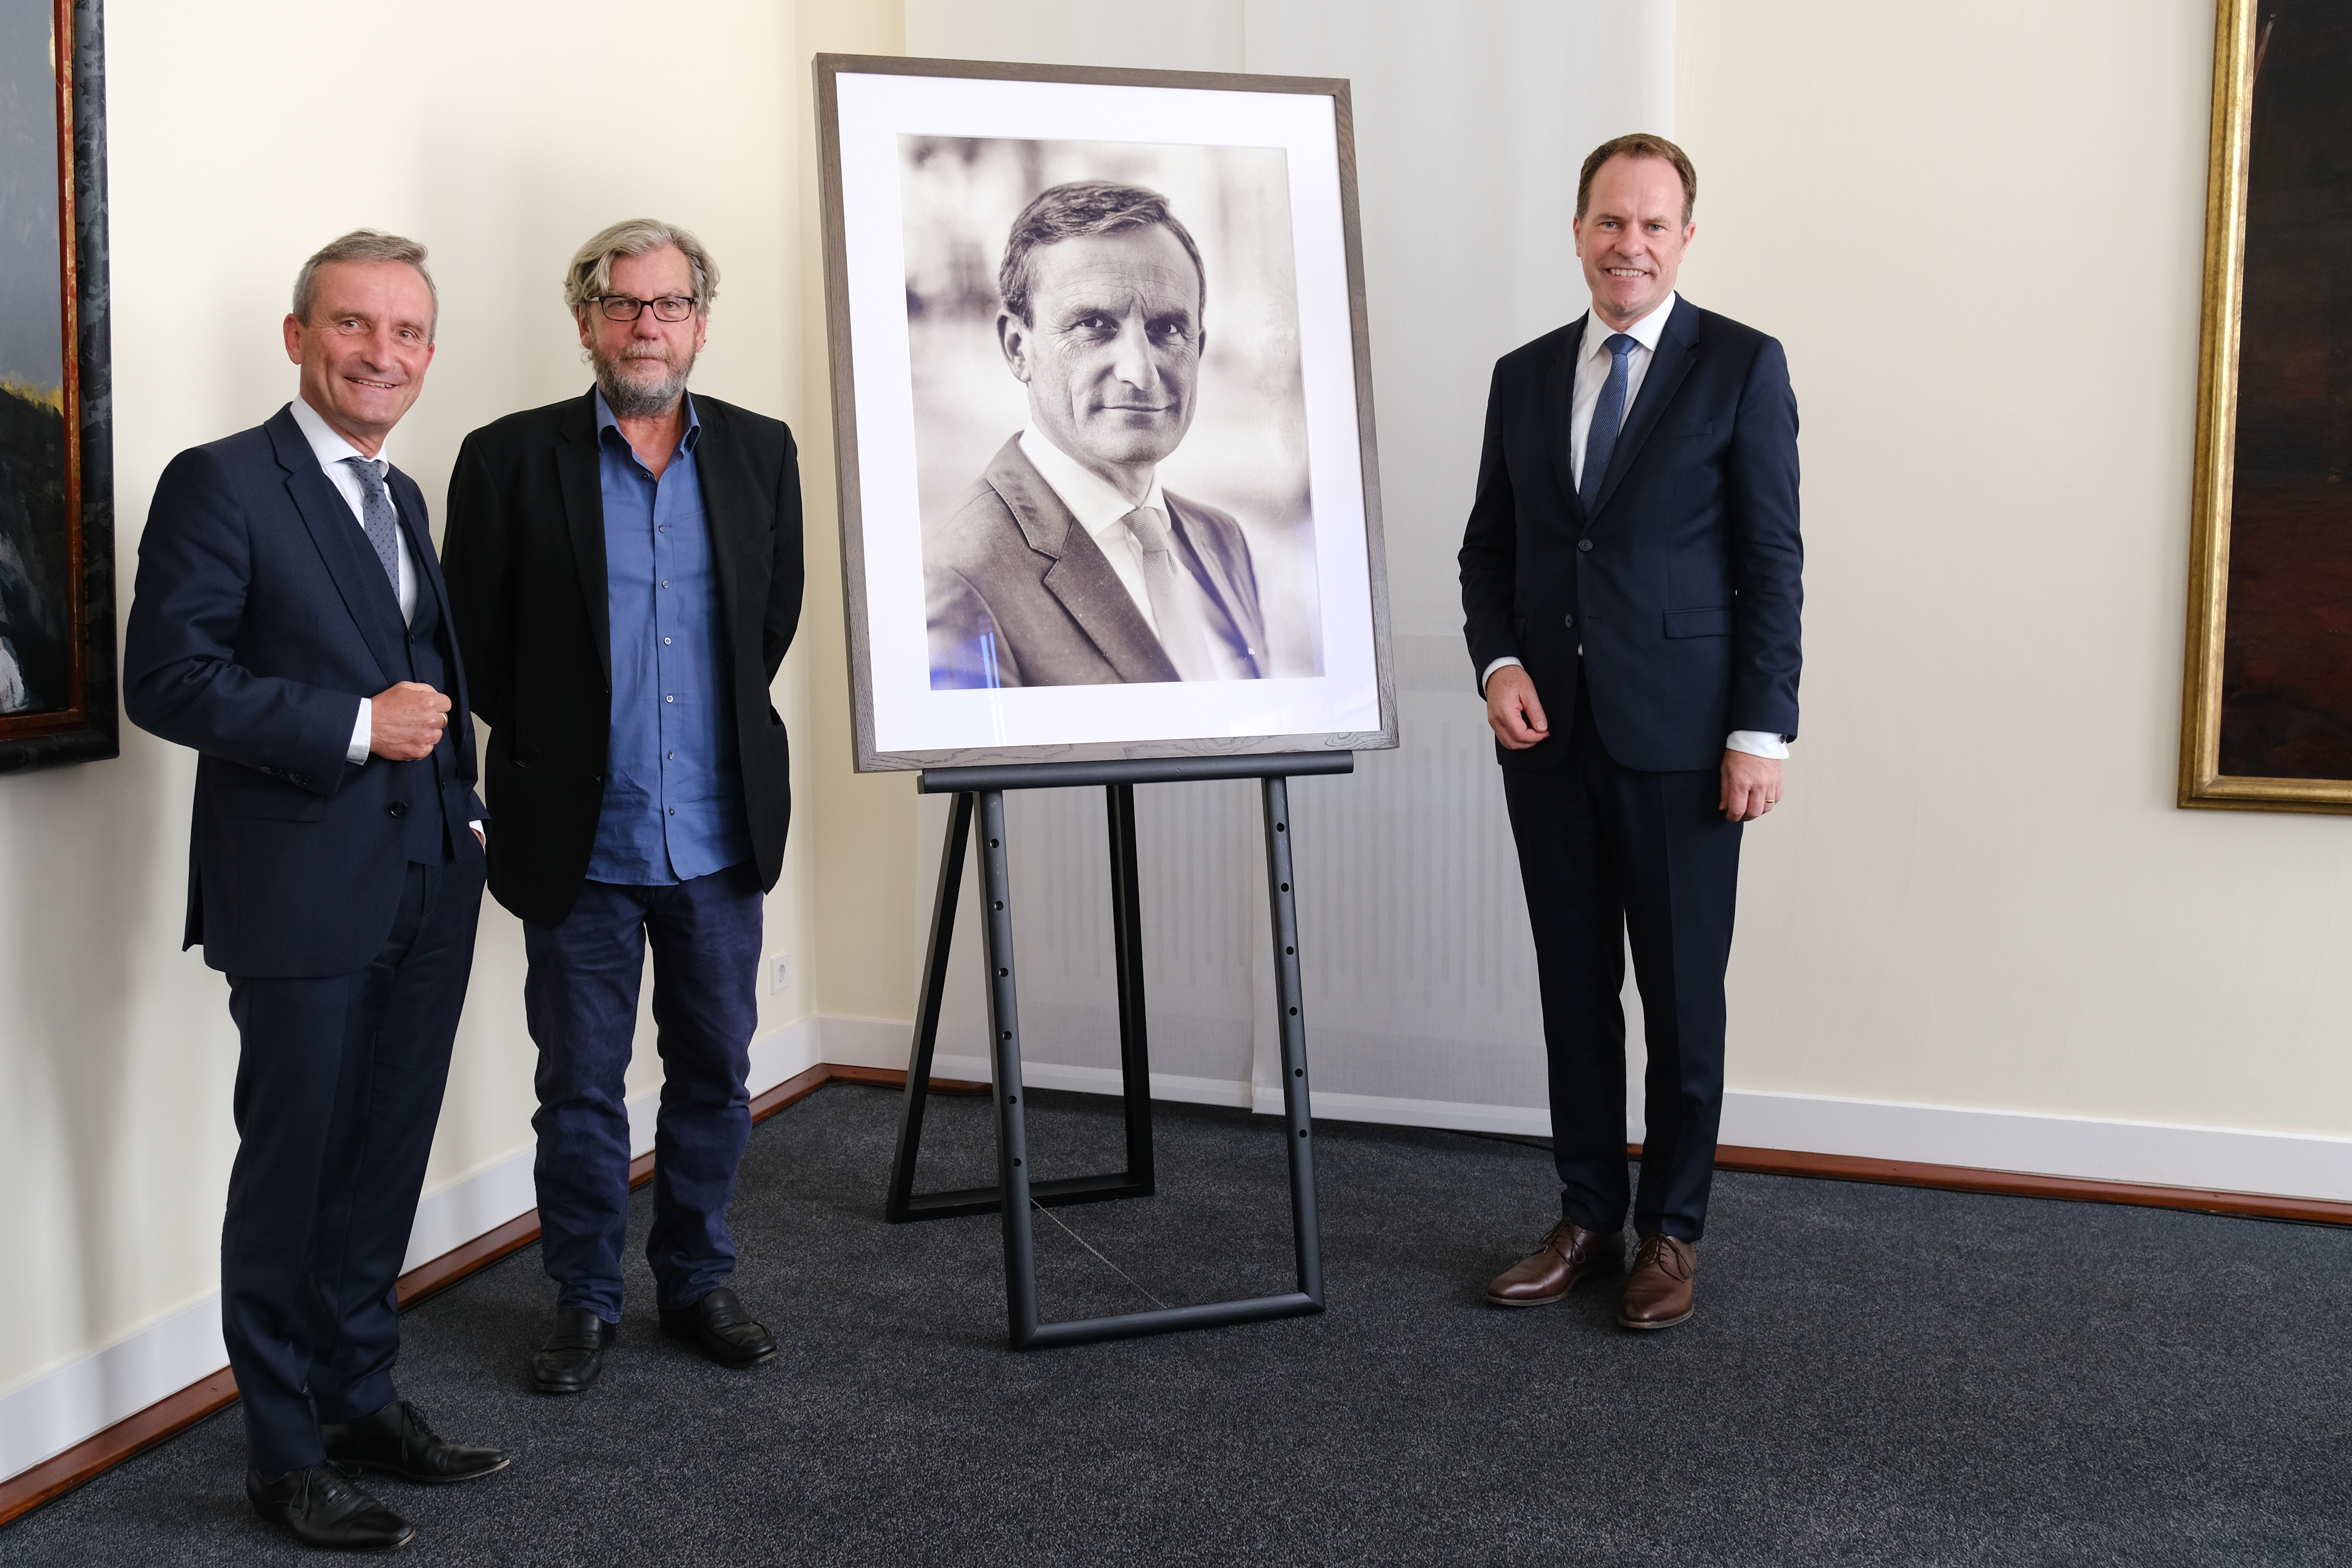 Das vom Fotokünstler Thomas Ruff (Mitte) bearbeitet Porträt von Oberbürgermeister a.D. Thomas Geisel (links) ist die erste Fotografie im Ältestensaal,©Landeshauptstadt Düsseldorf/Michael Gstettenbauer